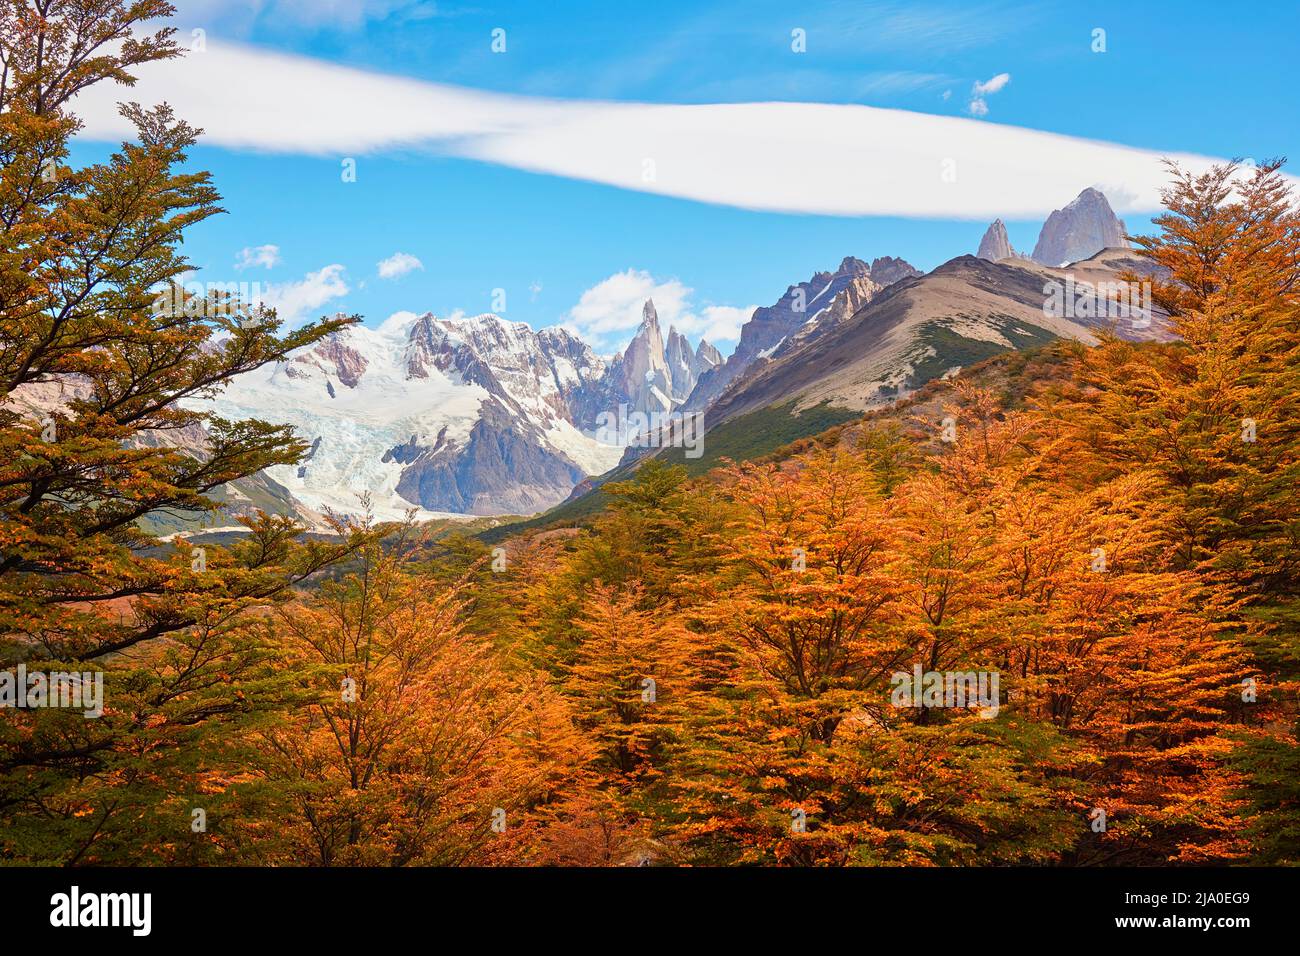 Il paesaggio del monte Cerro Torre è circondato dai colori vivaci degli alberi di Lengas in autunno, El Chalten, Santa Cruz, Patagonia Argentina. Foto Stock